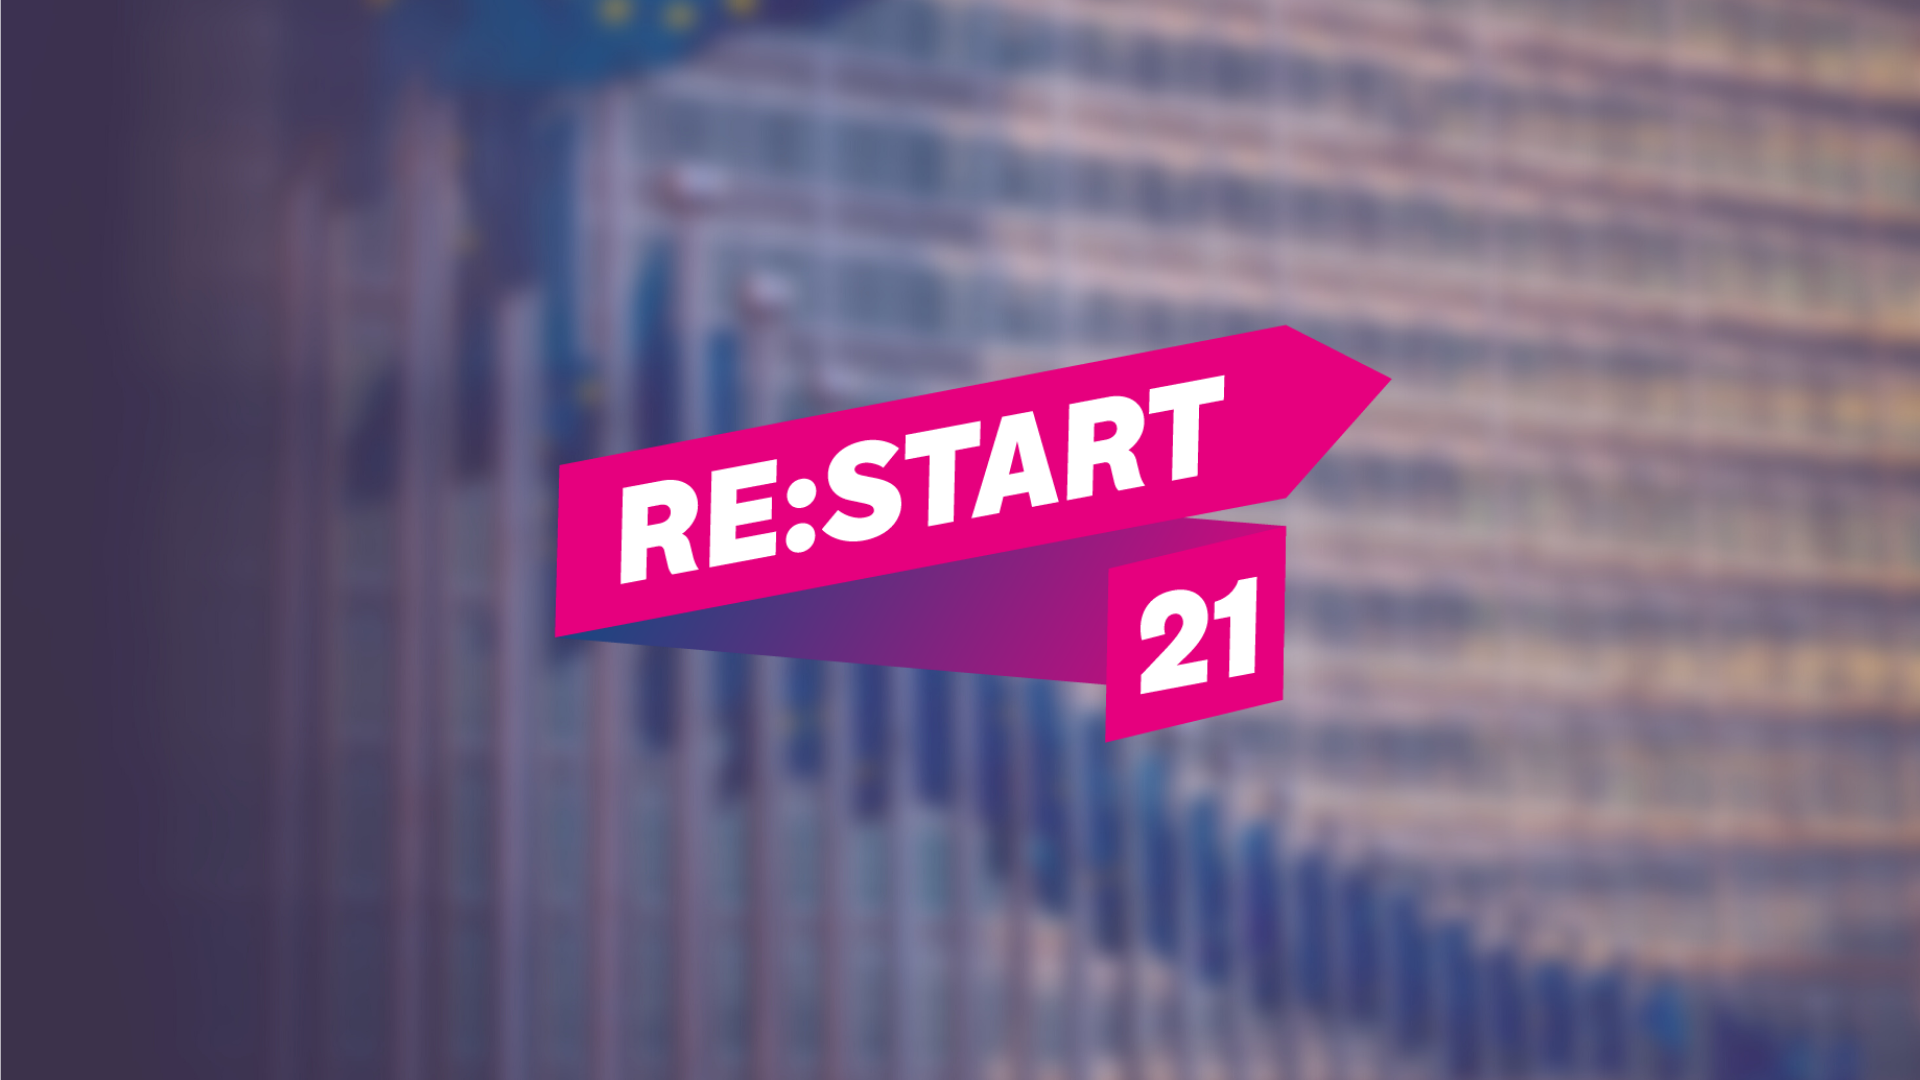 ReStart21 Europe